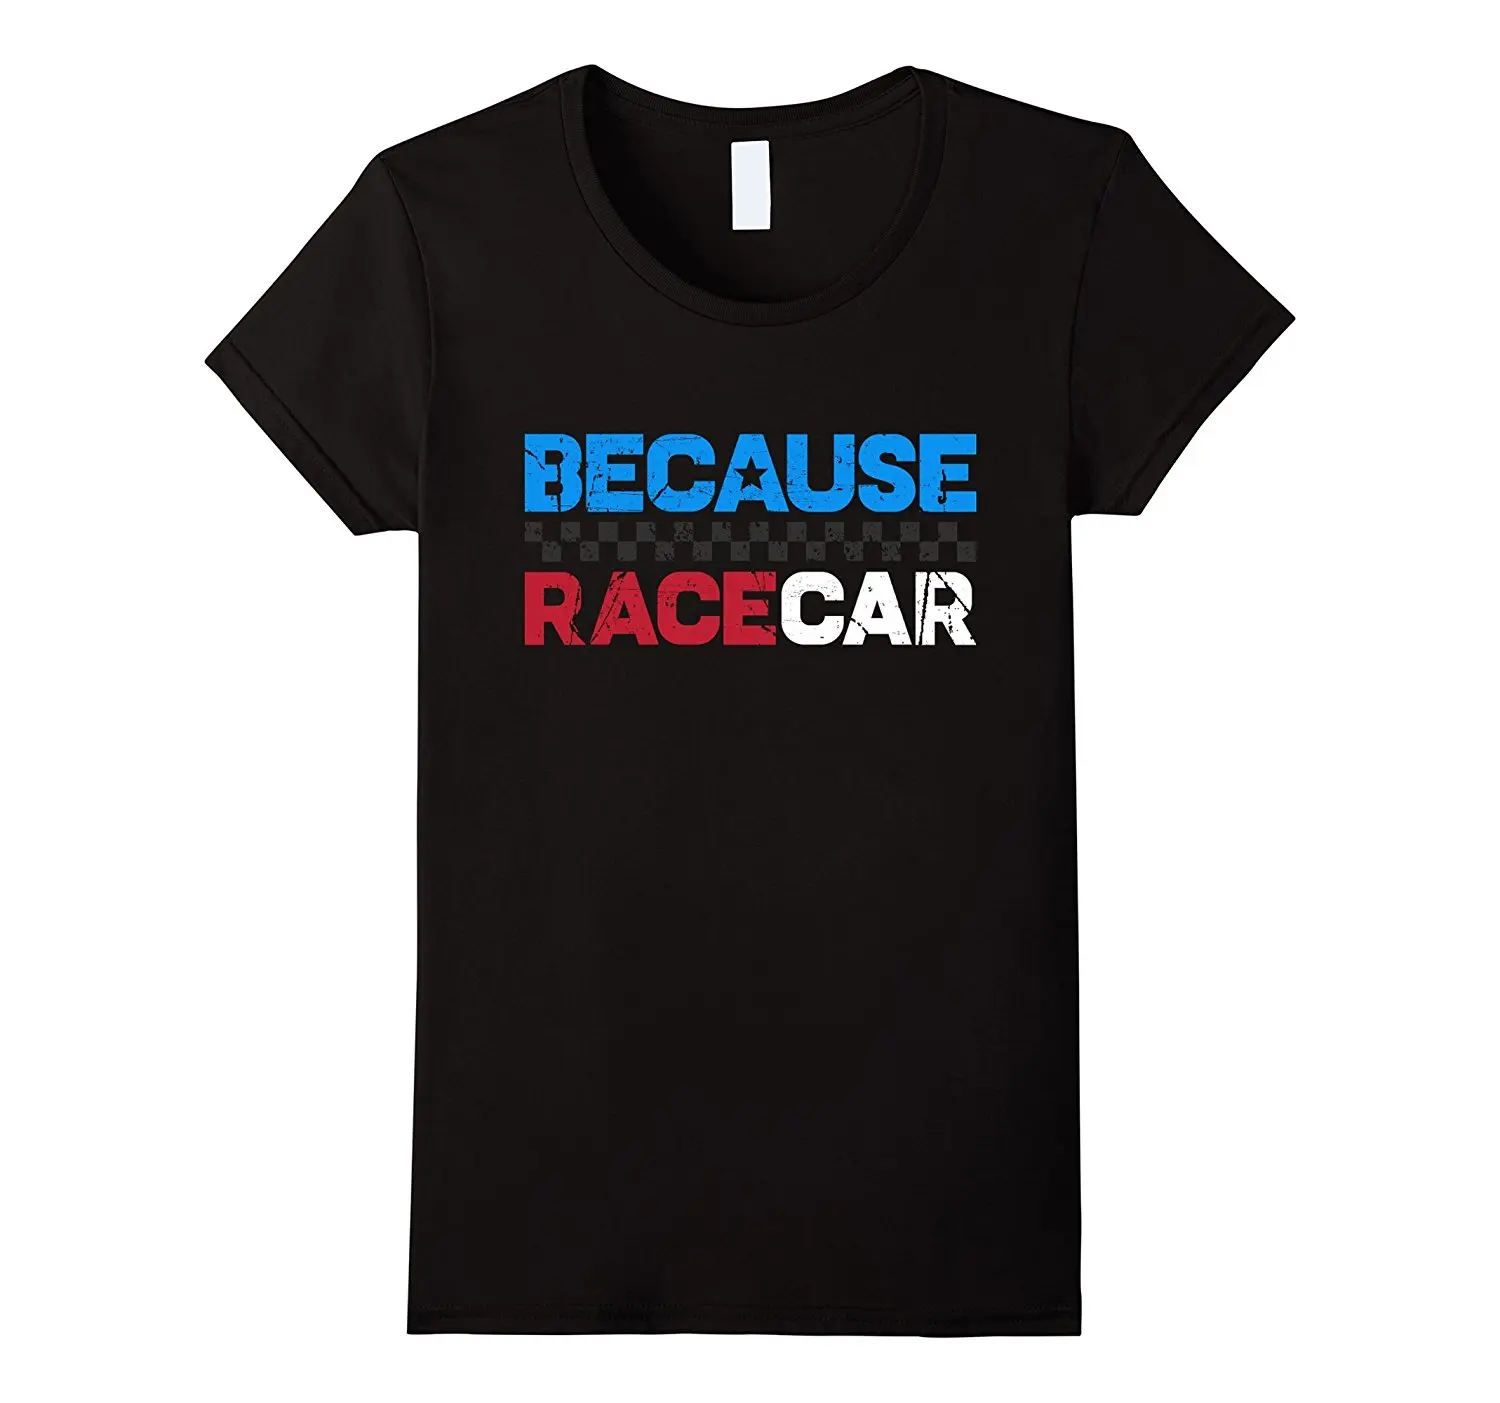 2019 Новая классная футболка, футболка с гоночной машиной, Винтажная футболка с гонщиками, Модная хлопковая футболка